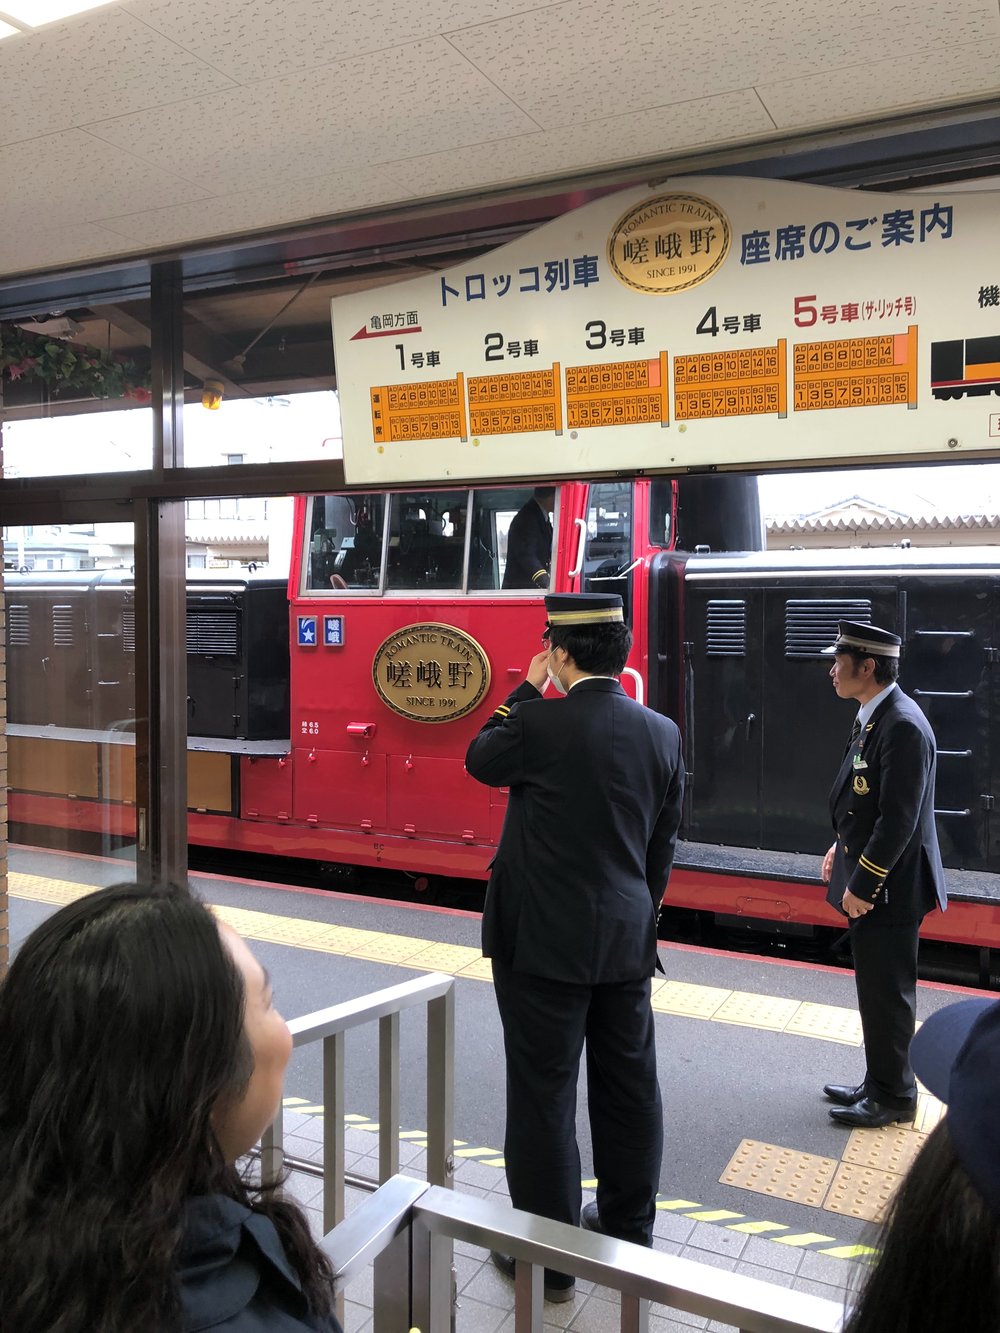 Romantic Train, Kyoto.